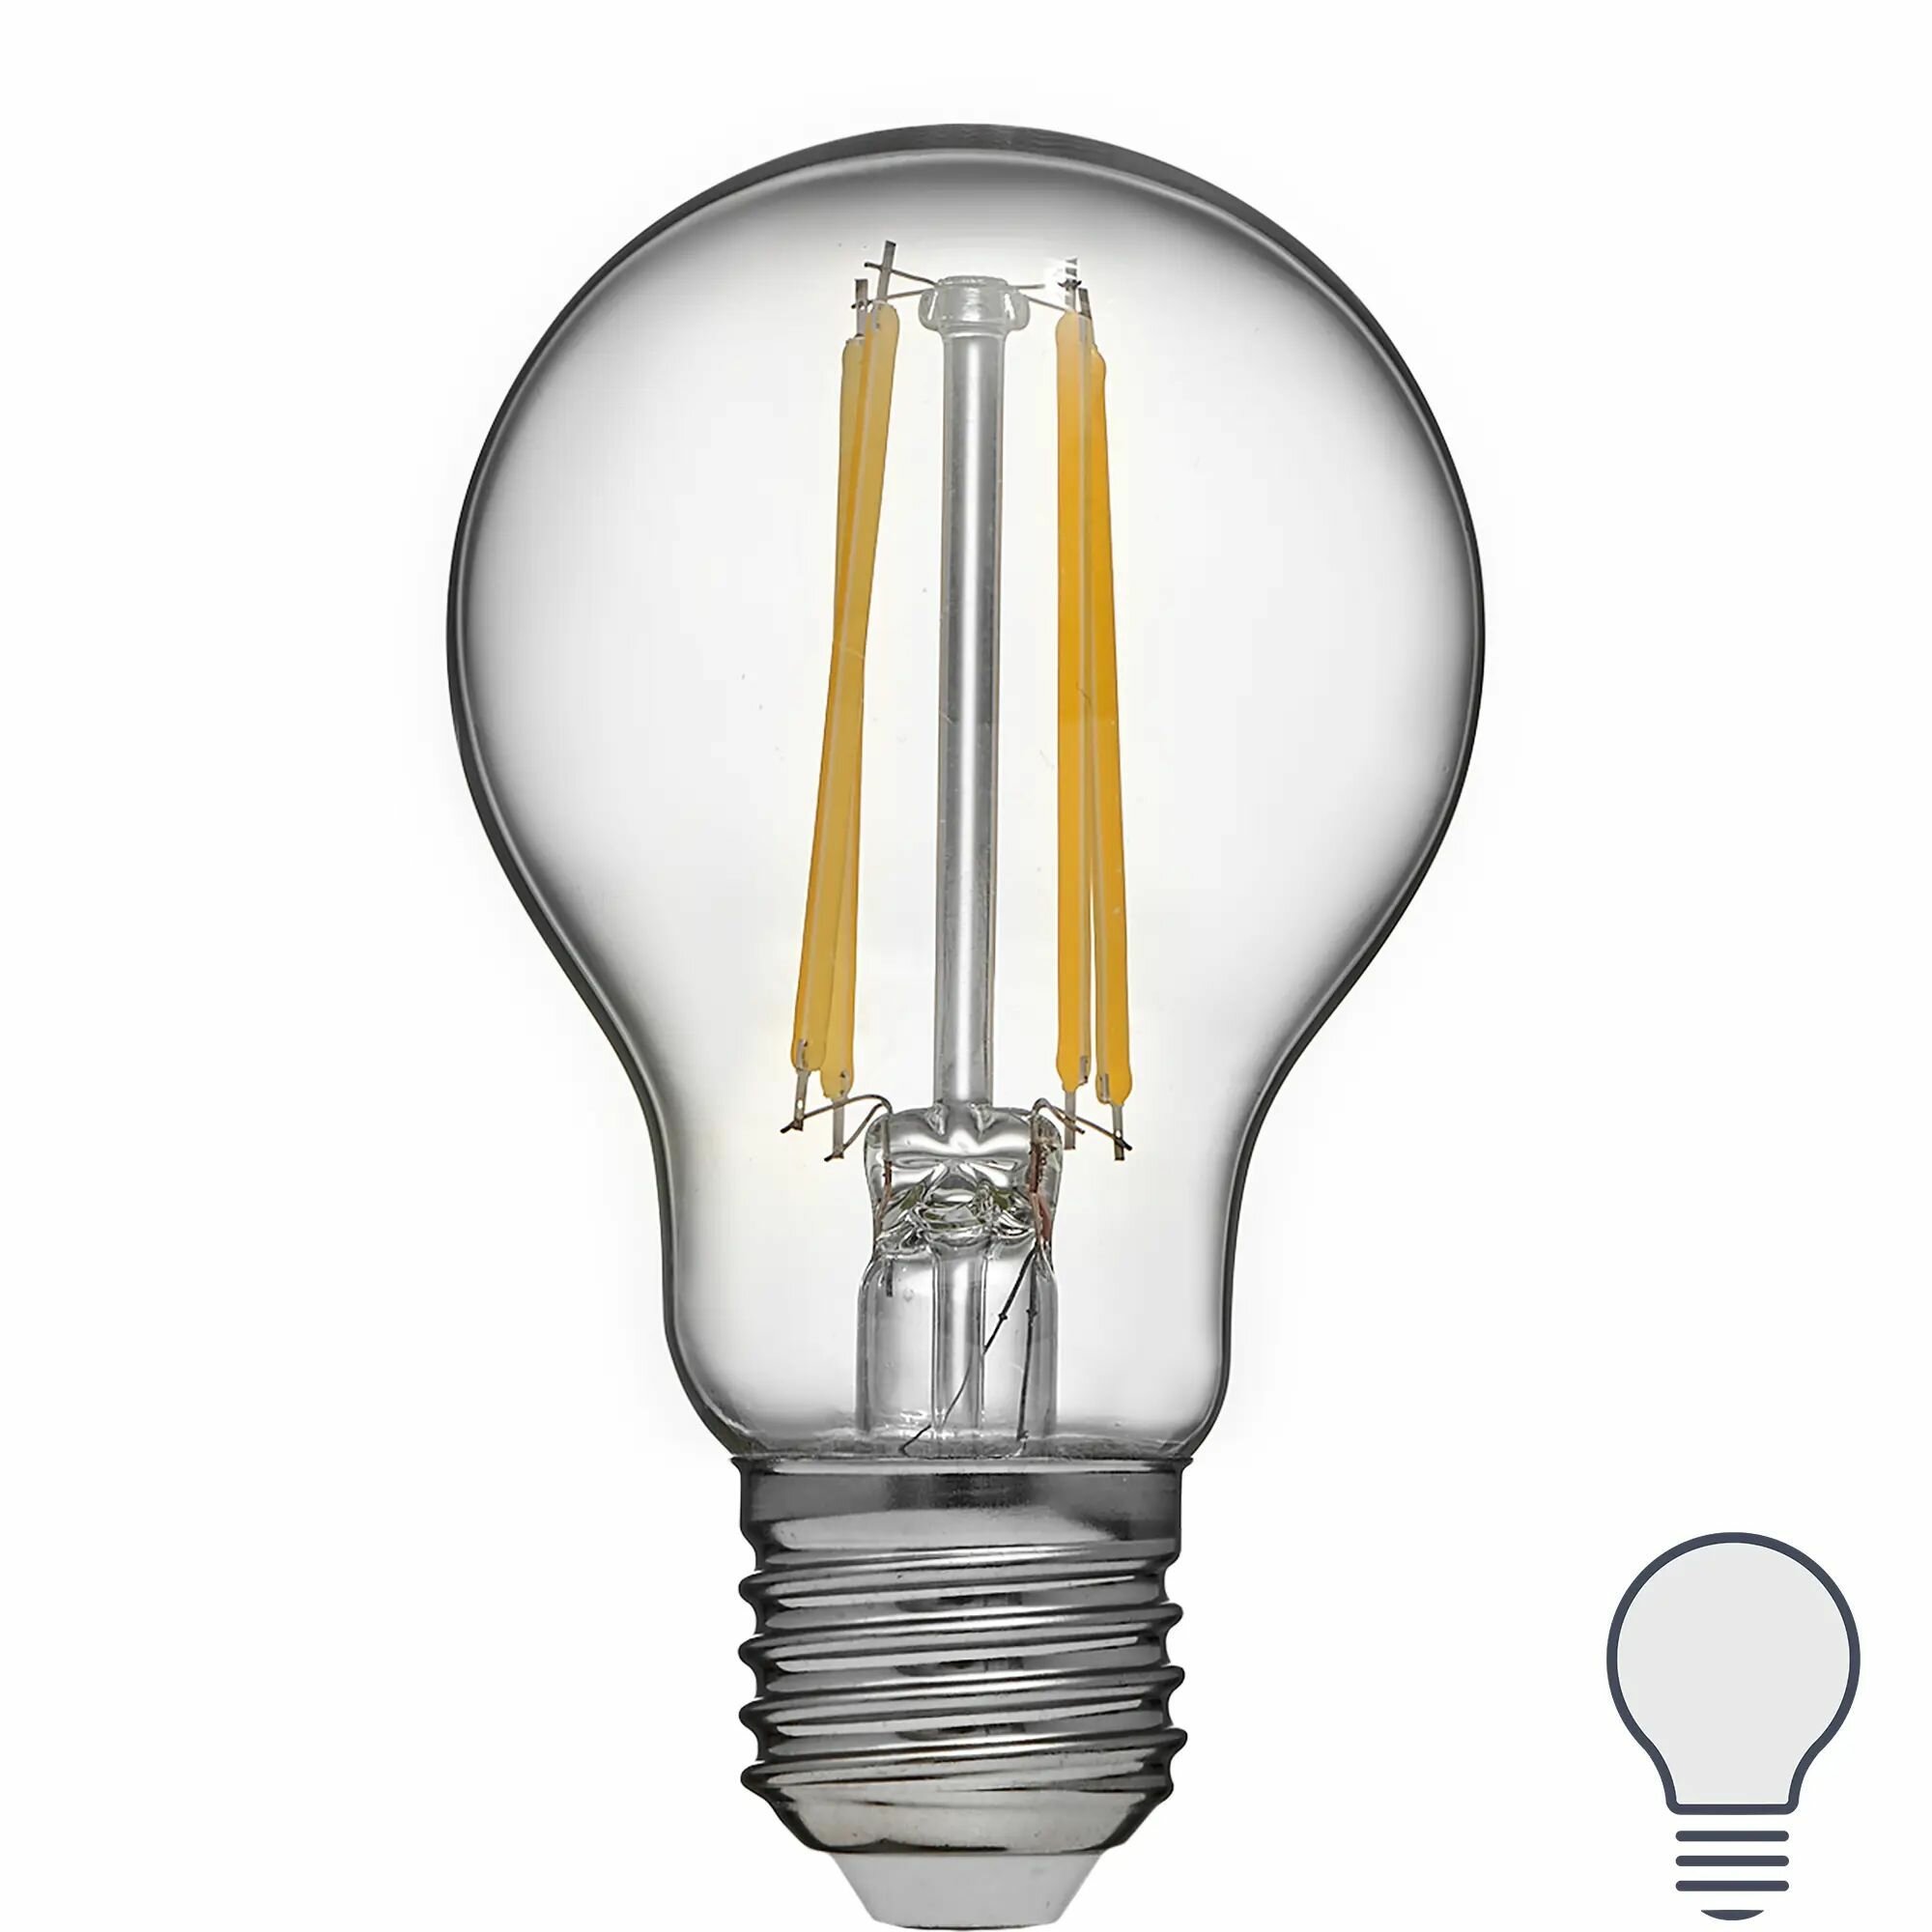 Лампа светодиодная Volpe LEDF E27 220-240 В 9 Вт груша прозрачная 1000 лм нейтральный белый свет